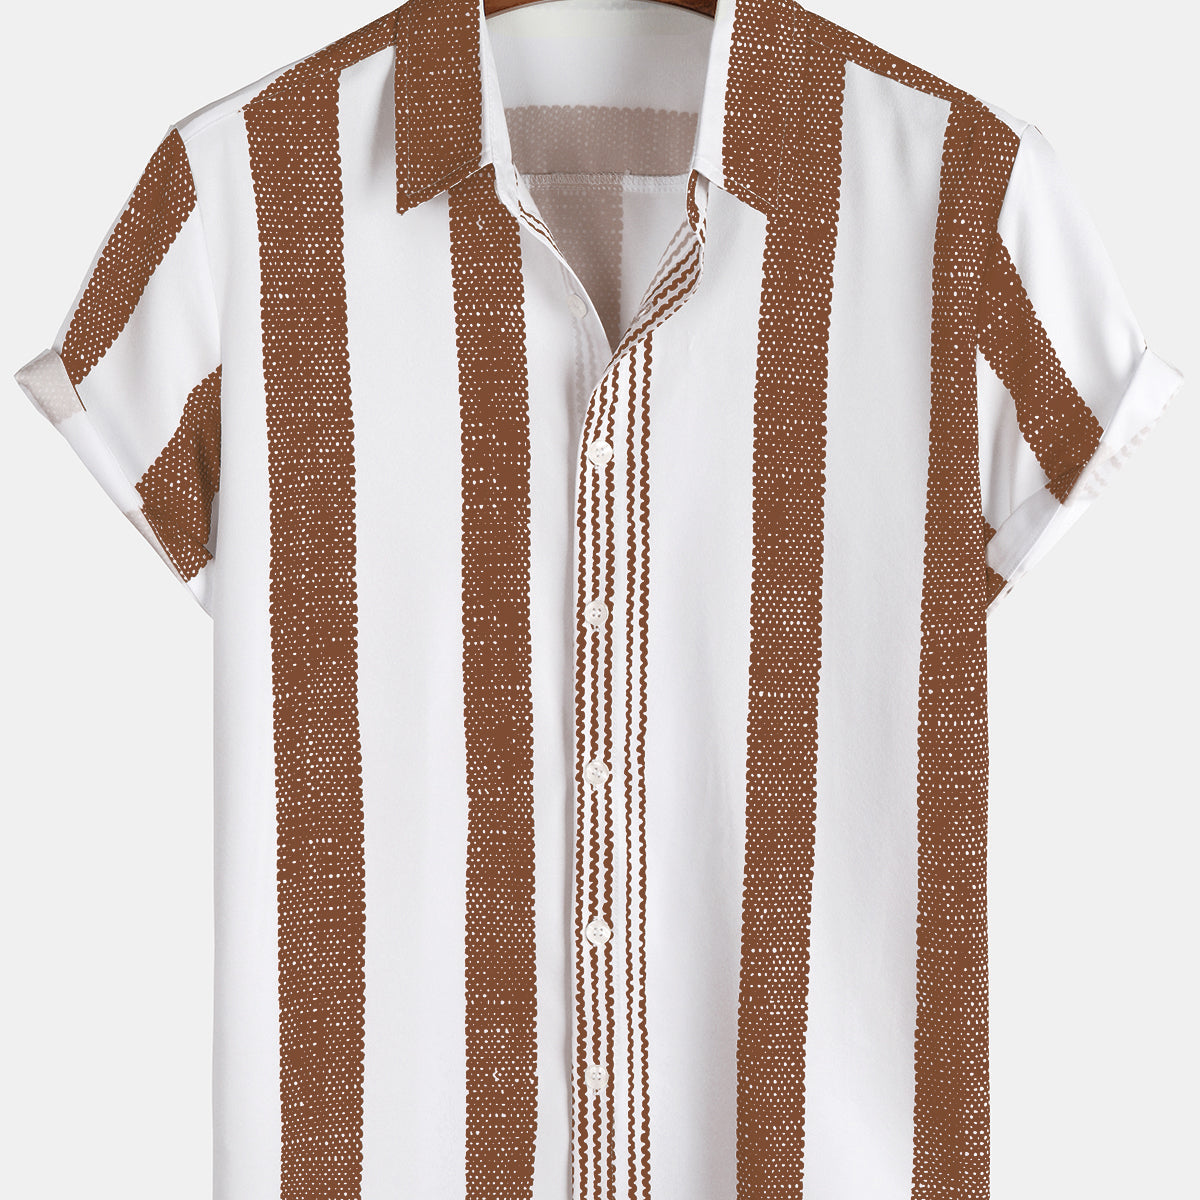 Camisa casual de manga corta con rayas verticales marrón vintage para hombre